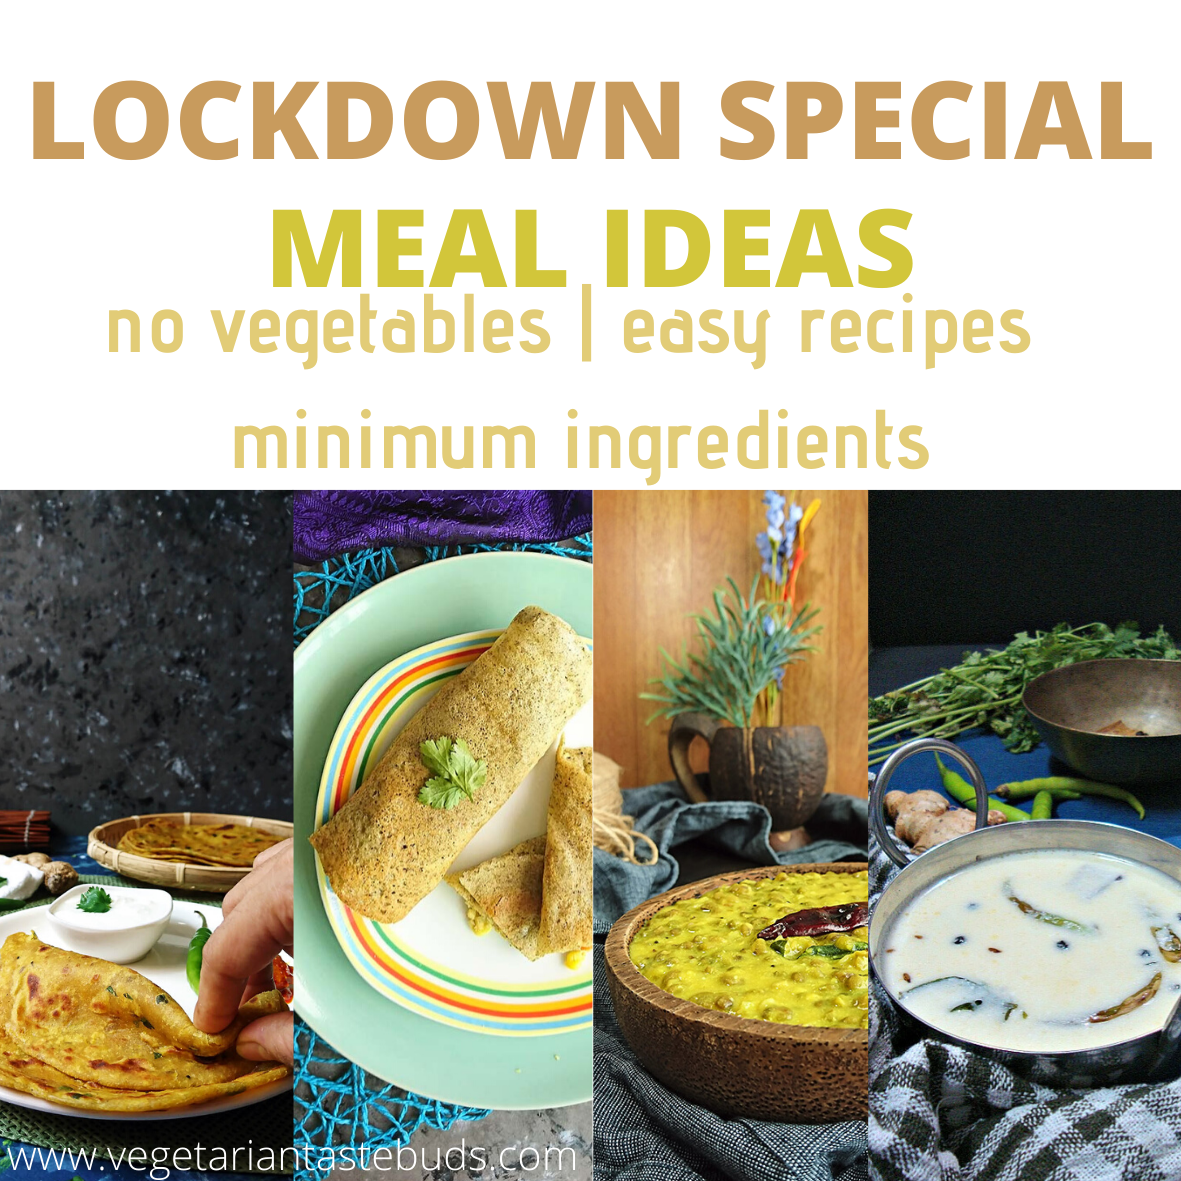 Lockdown Special Lunch Dinner Ideas No Vegetables Minimum Ingredients Easy Recipes Meal Plan Vegetarian Tastebuds